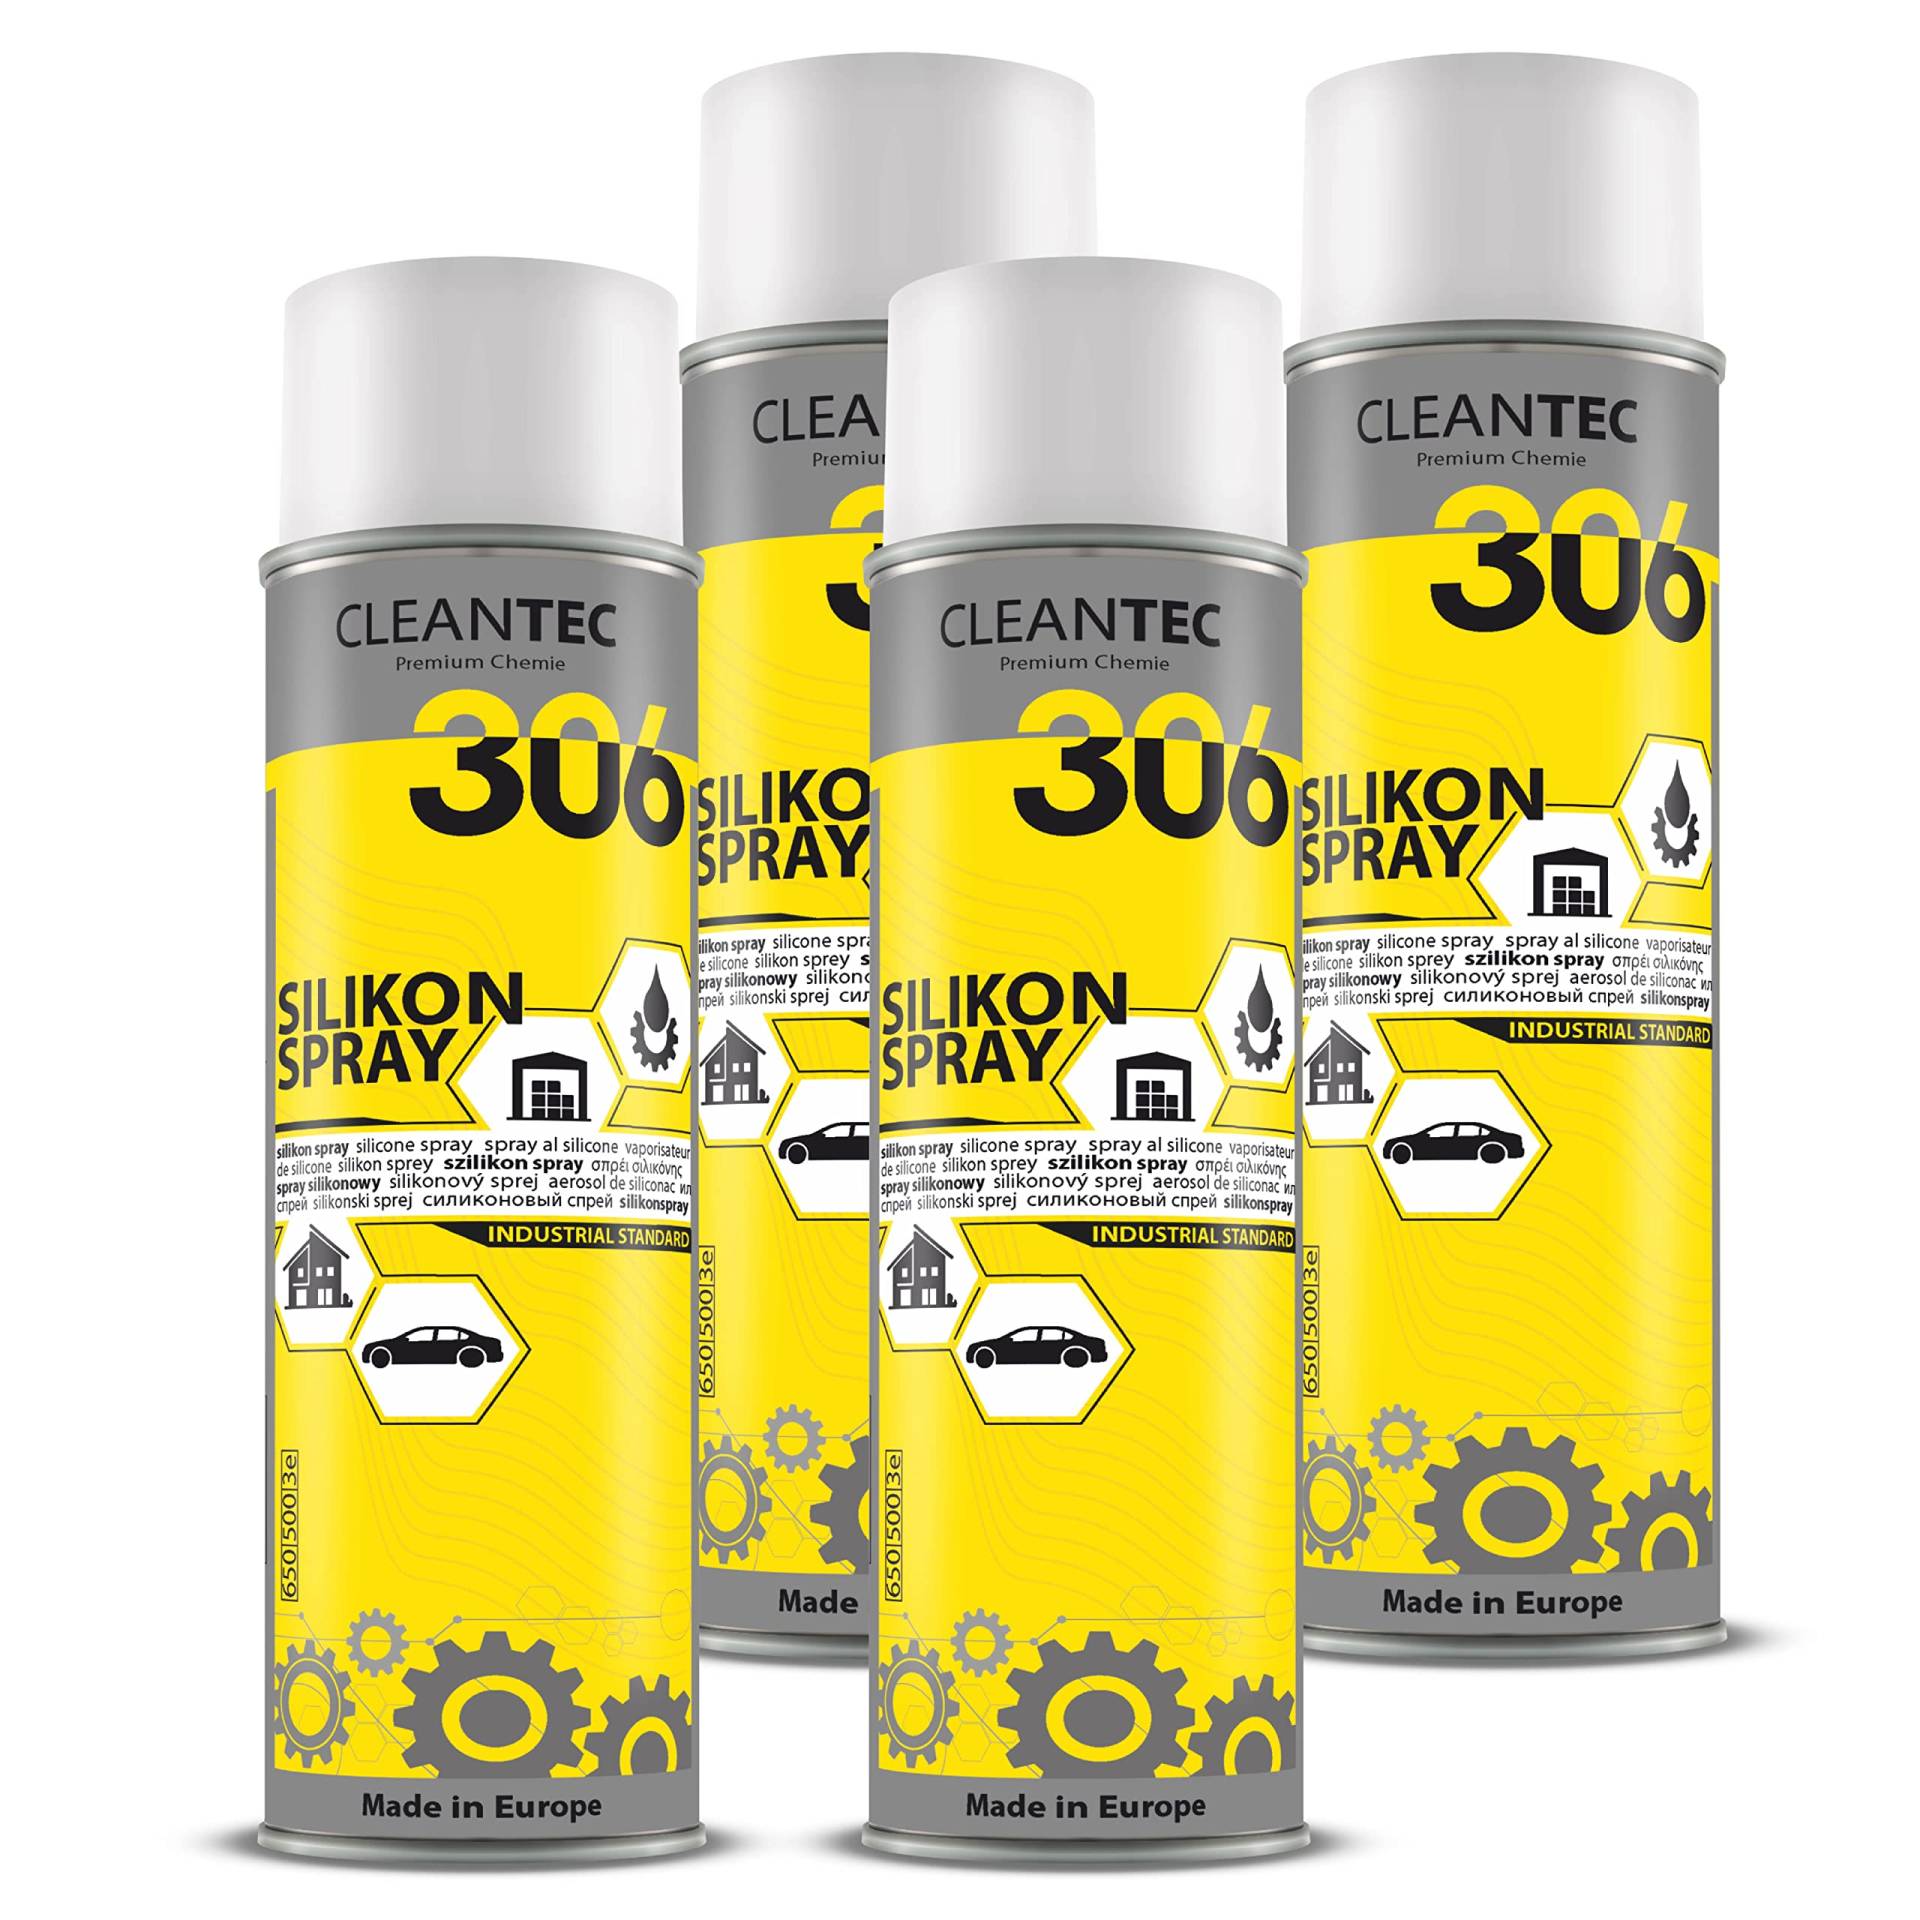 CleanTEC 306 Silikonspray 500ml farblos, schmiert, pflegt, schützt Gummi-, Kunststoff-, Holz- und Metallteile (4) von cms CleanTEC GmbH